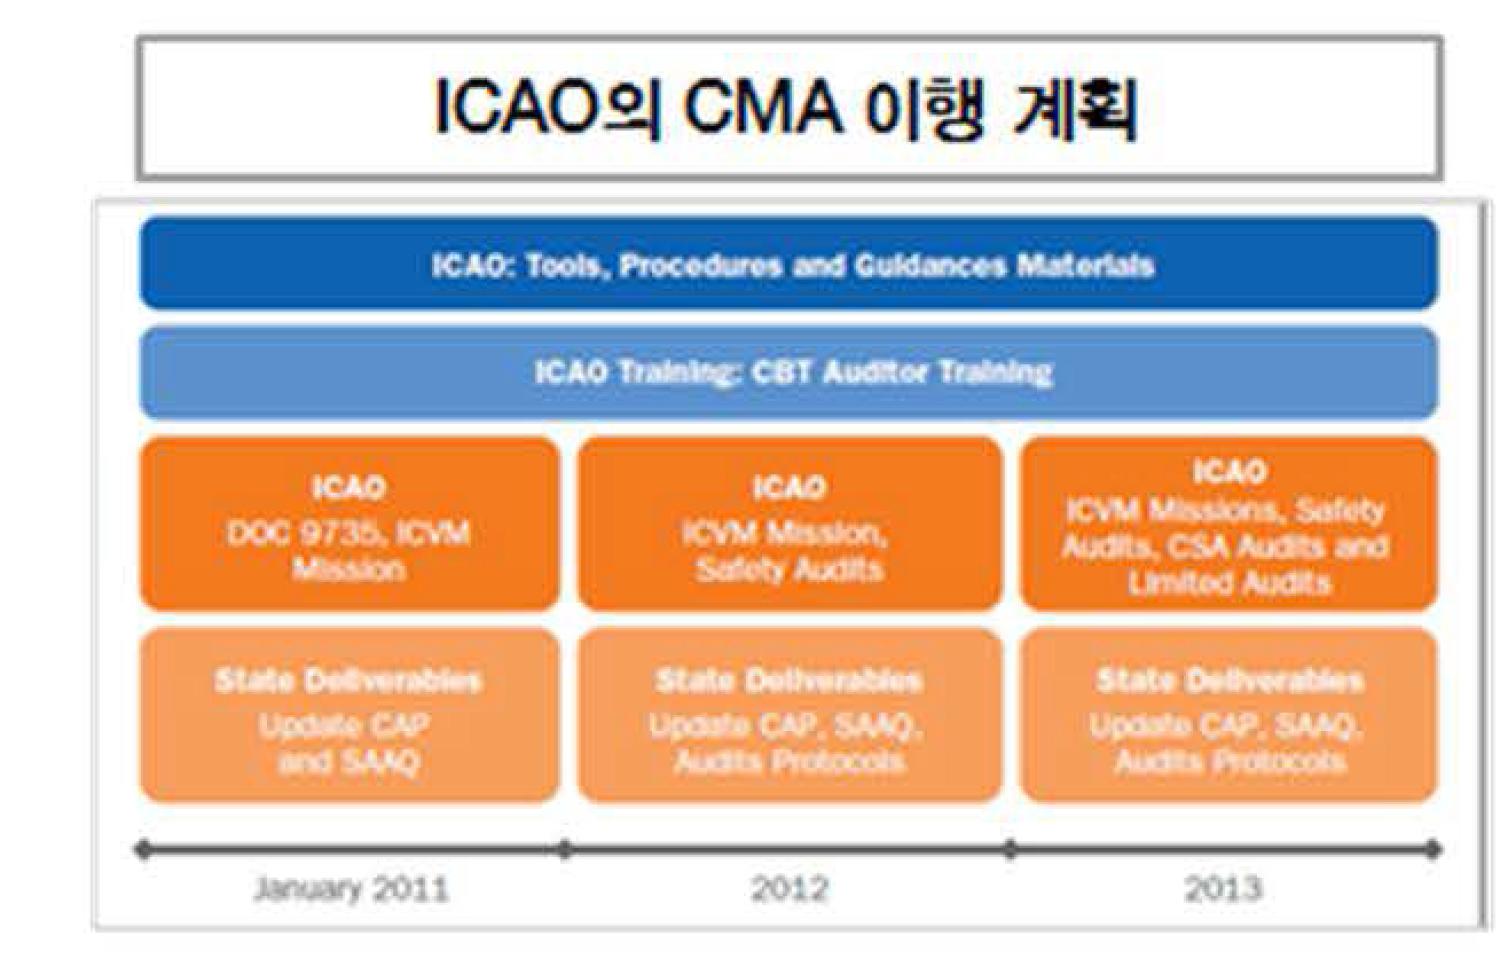 ICAO CMA 이행 계획